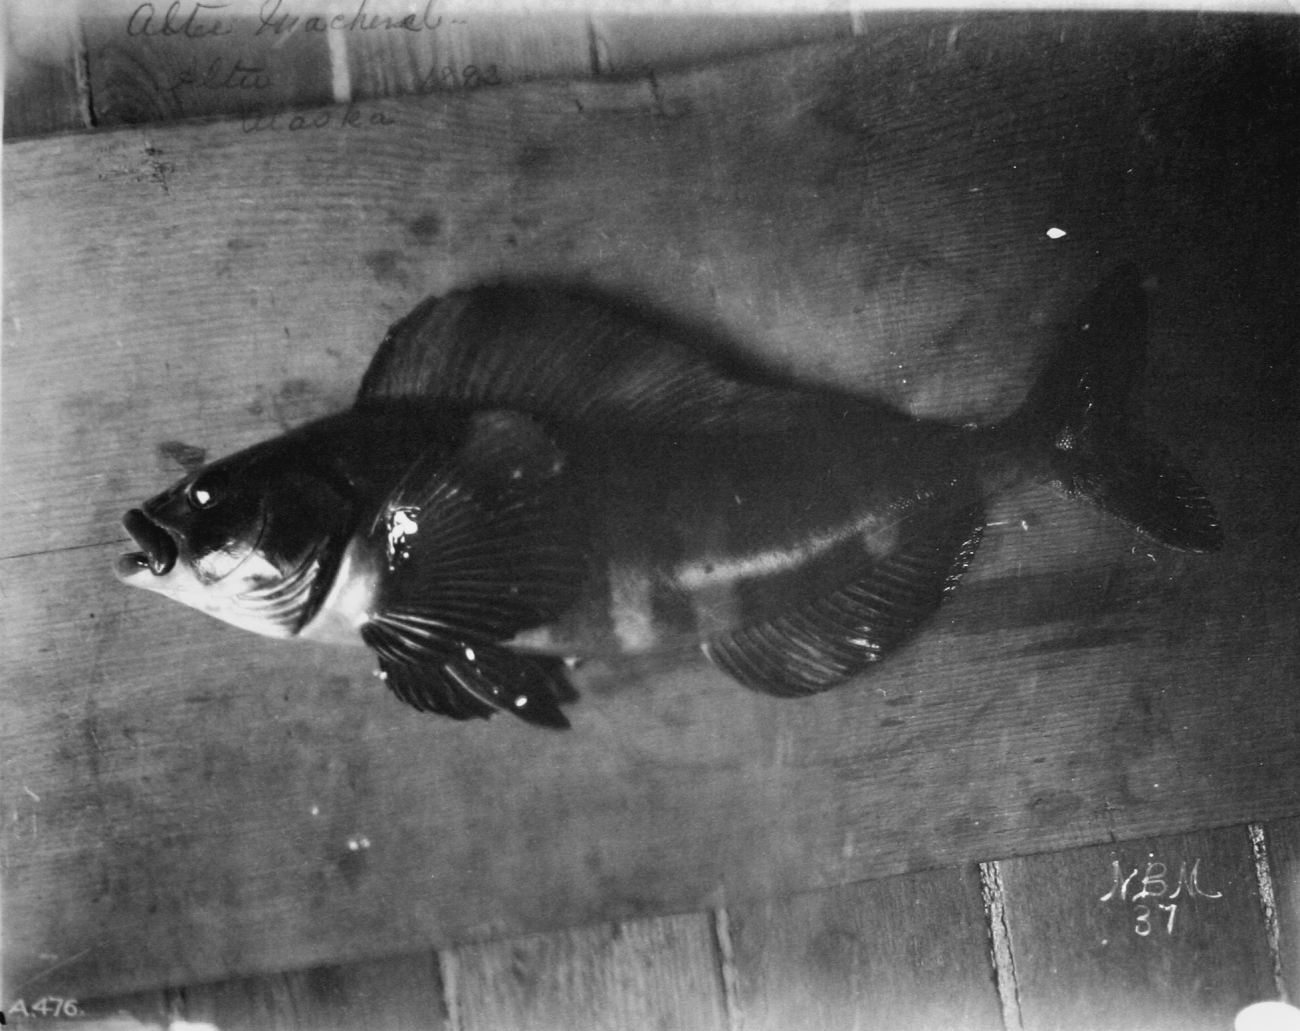 Atka mackerel, Atka, AK, 1893